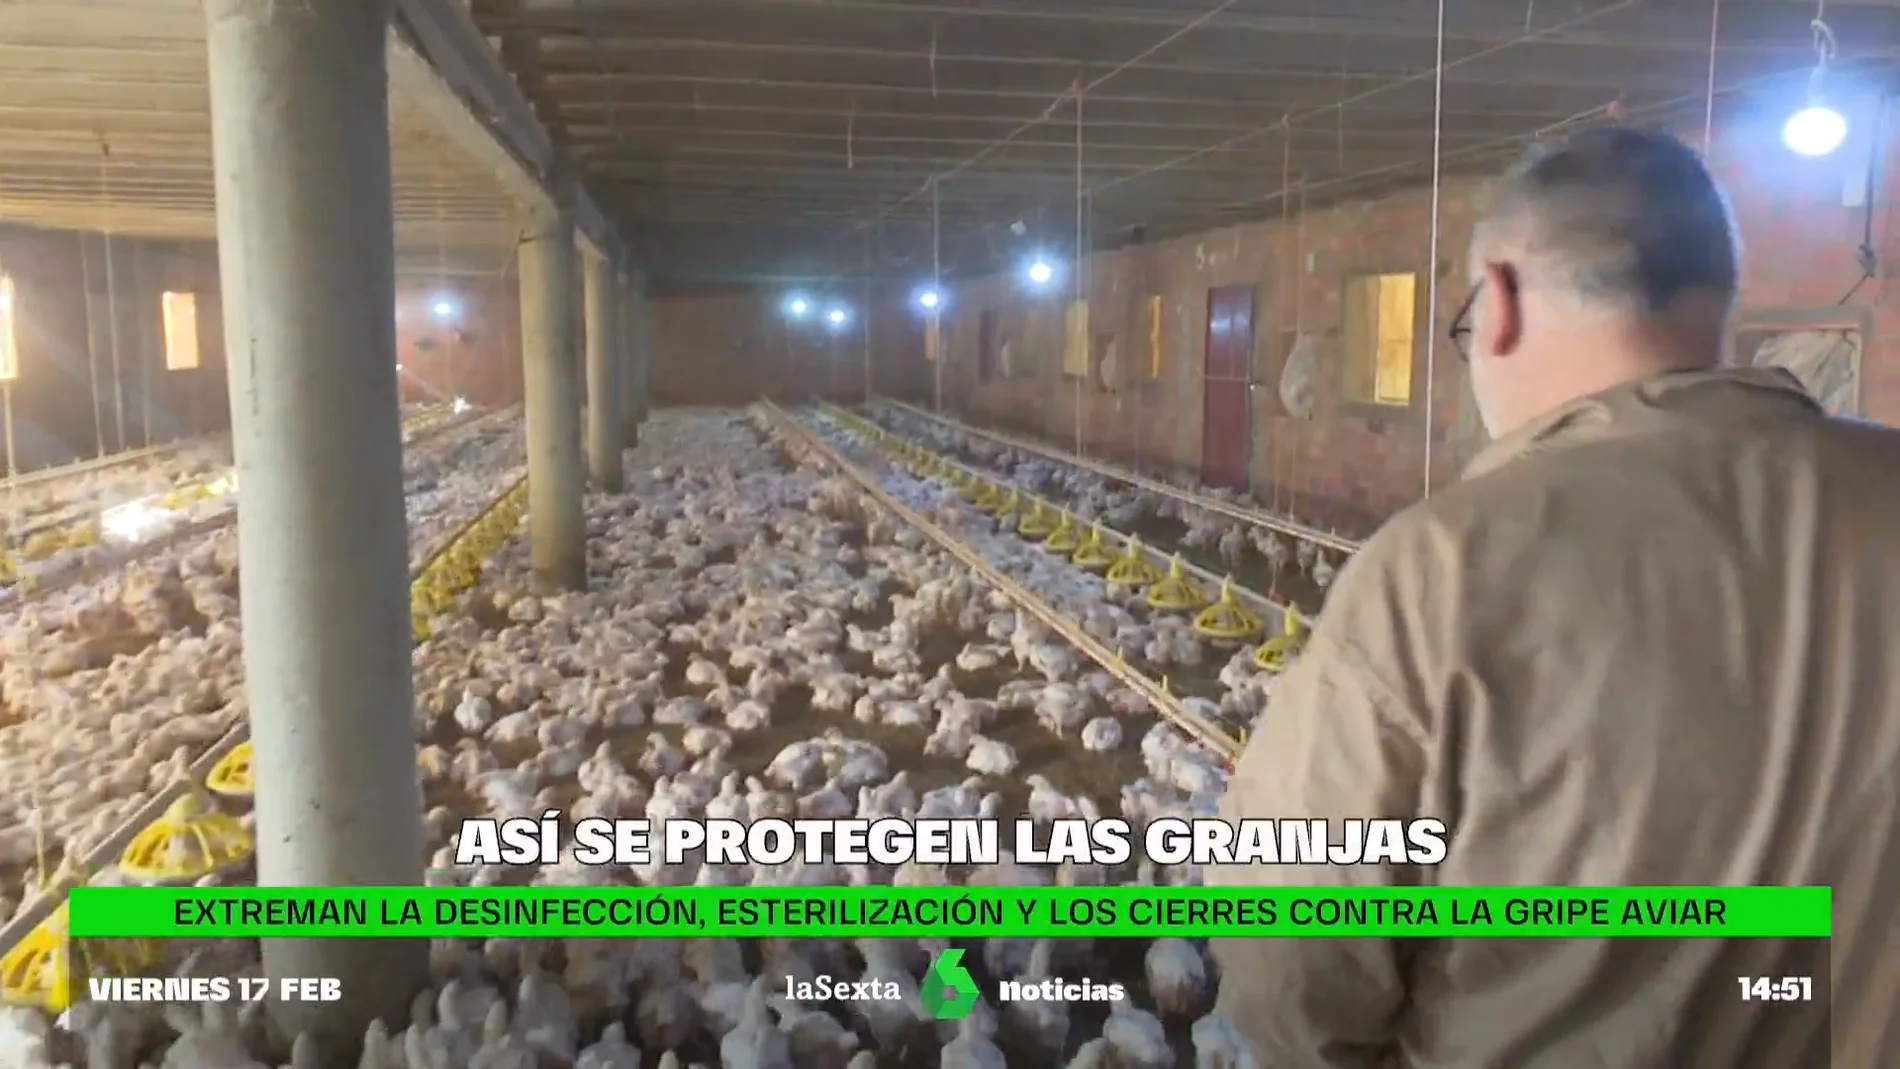 Así se protegen las granjas españolas contra la gripe aviar: desinfección, esterilización y vigilancia extrema